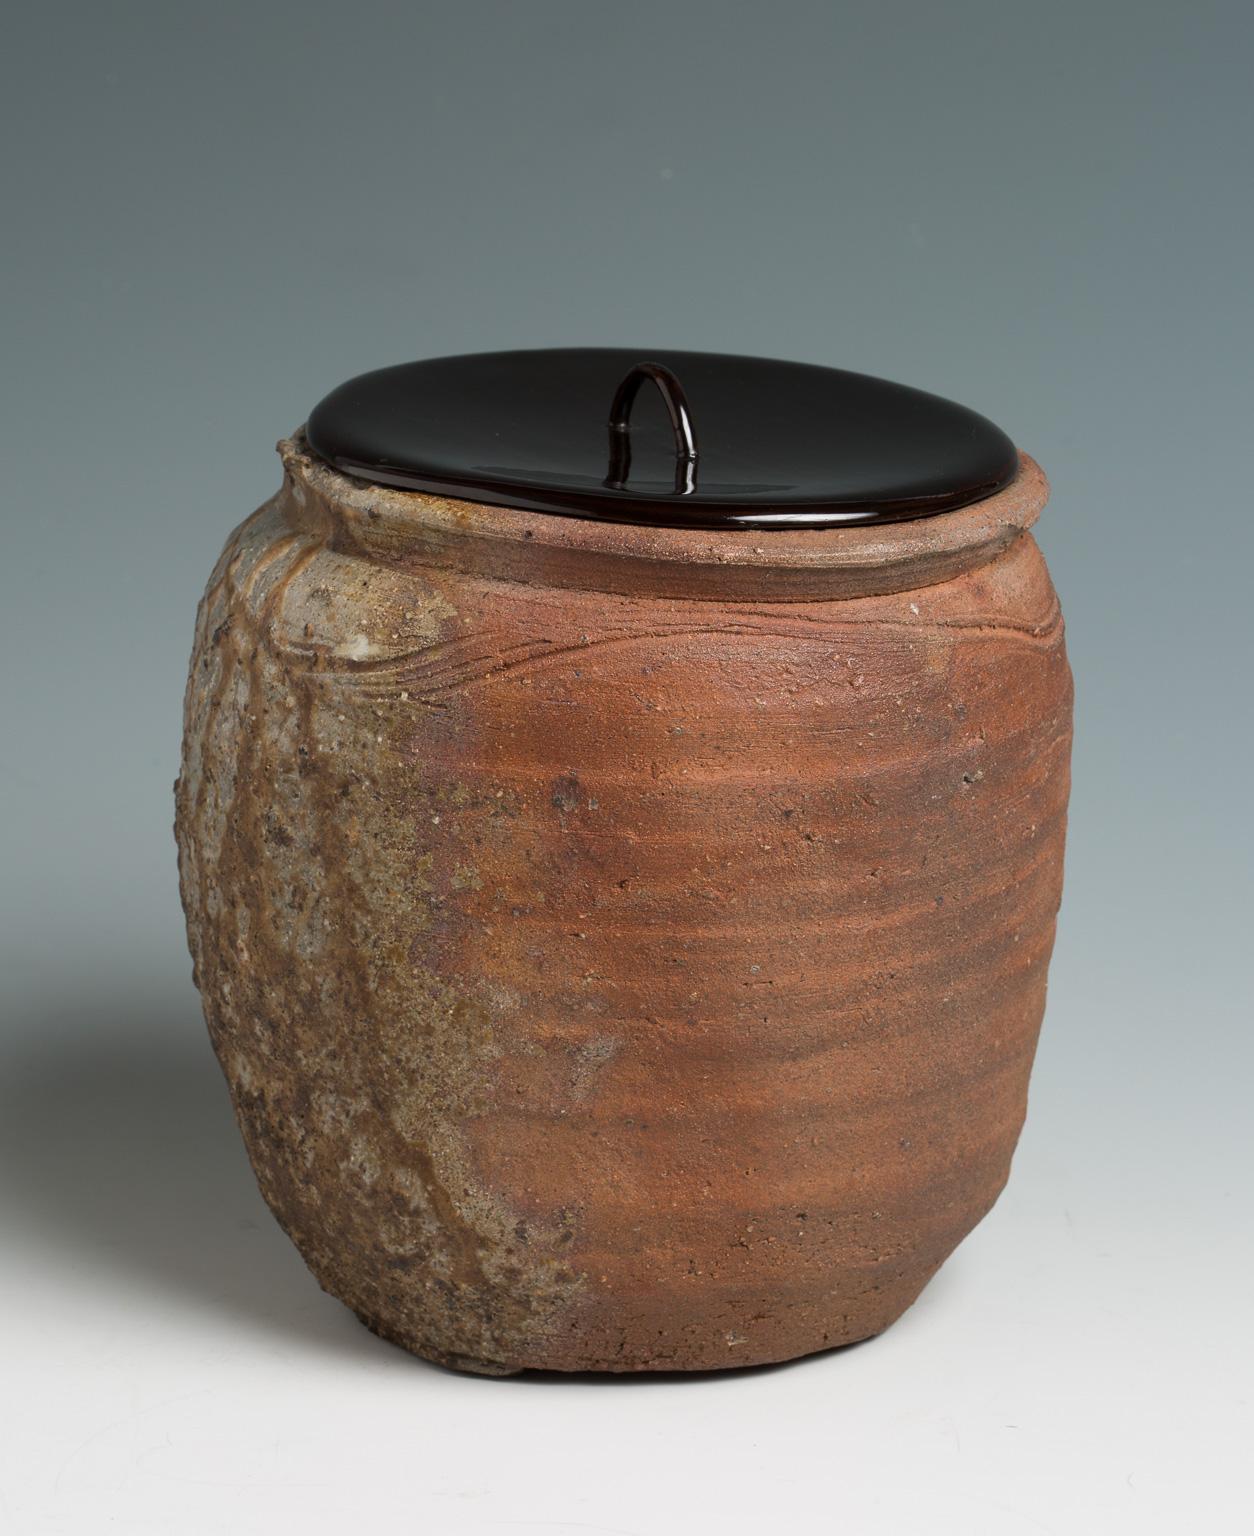 Japanese Ko-Bizen Water Jar ‘Mizusashi’ Named “Matsugane”, 16th Century 3